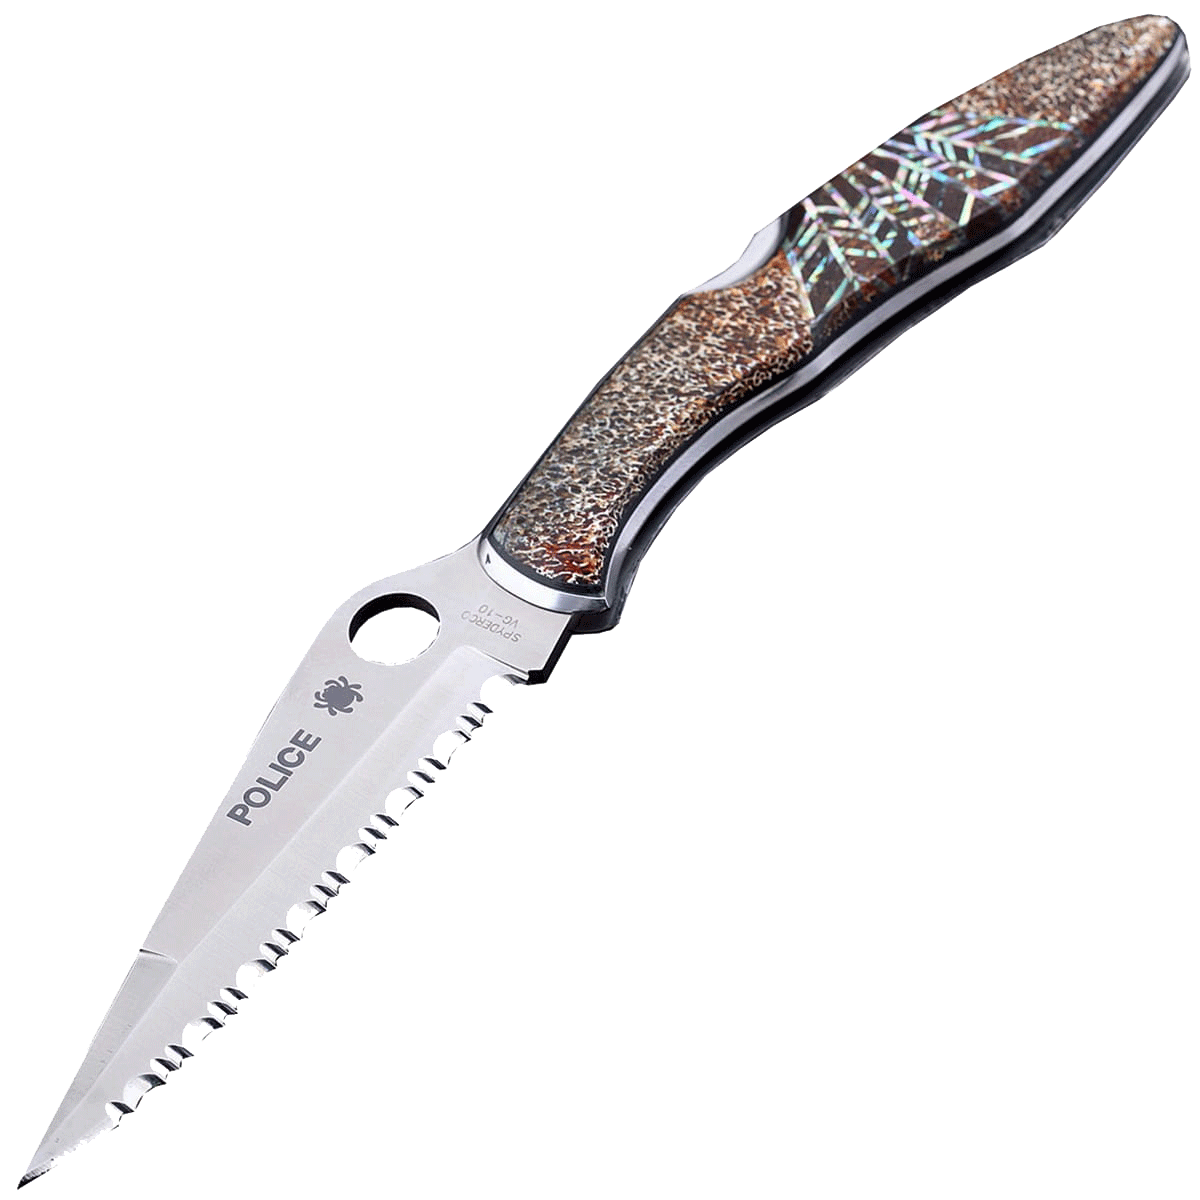 Коллекционный складной нож Santa Fe Spyderco Police Serrated, сталь VG-10, рукоять сталь с накладкой из тигрового коралла/абалона